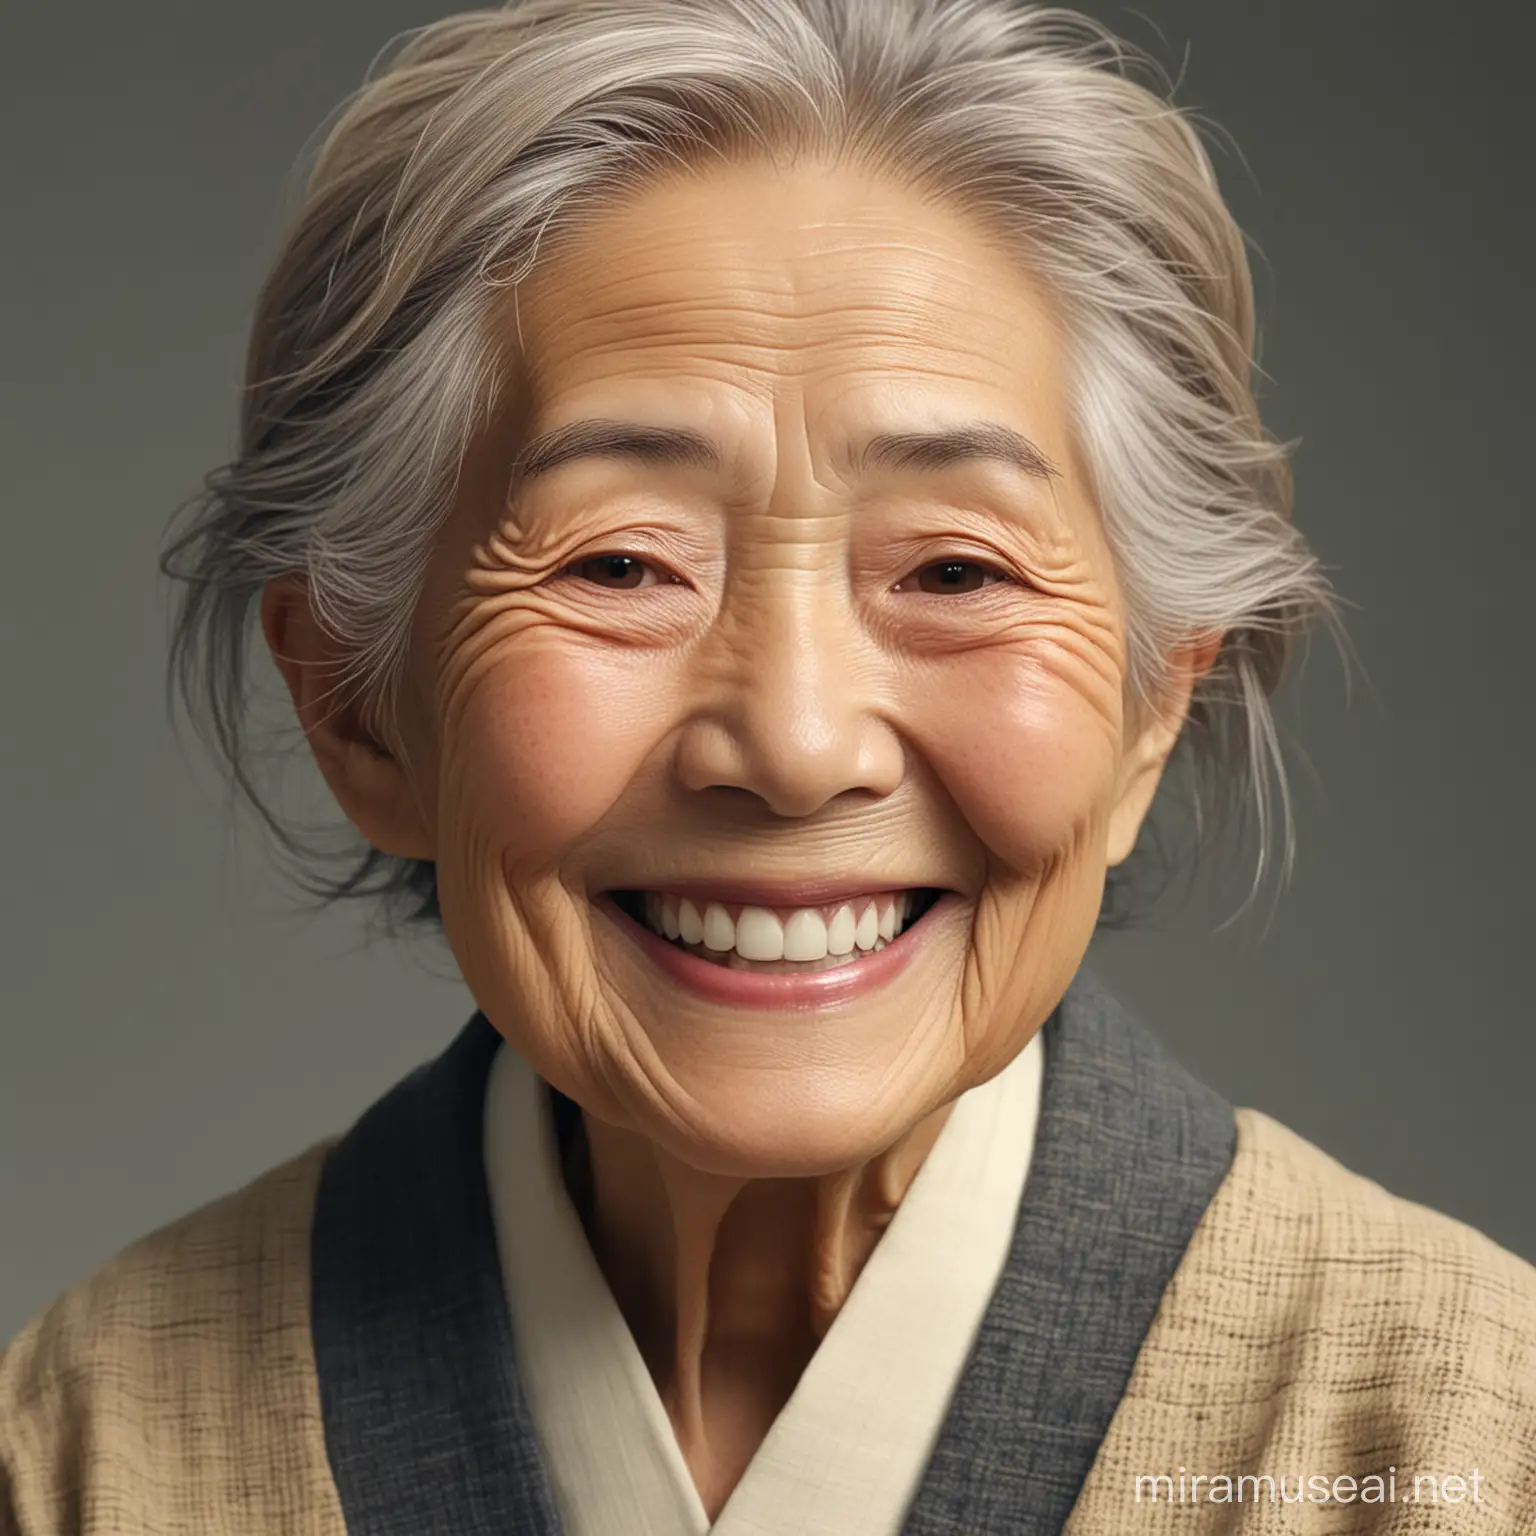 Generiere das Bild einer lebensfrohen 110 jährigen japanischen Frau, die lächelt, realistic, high resolution, 4K